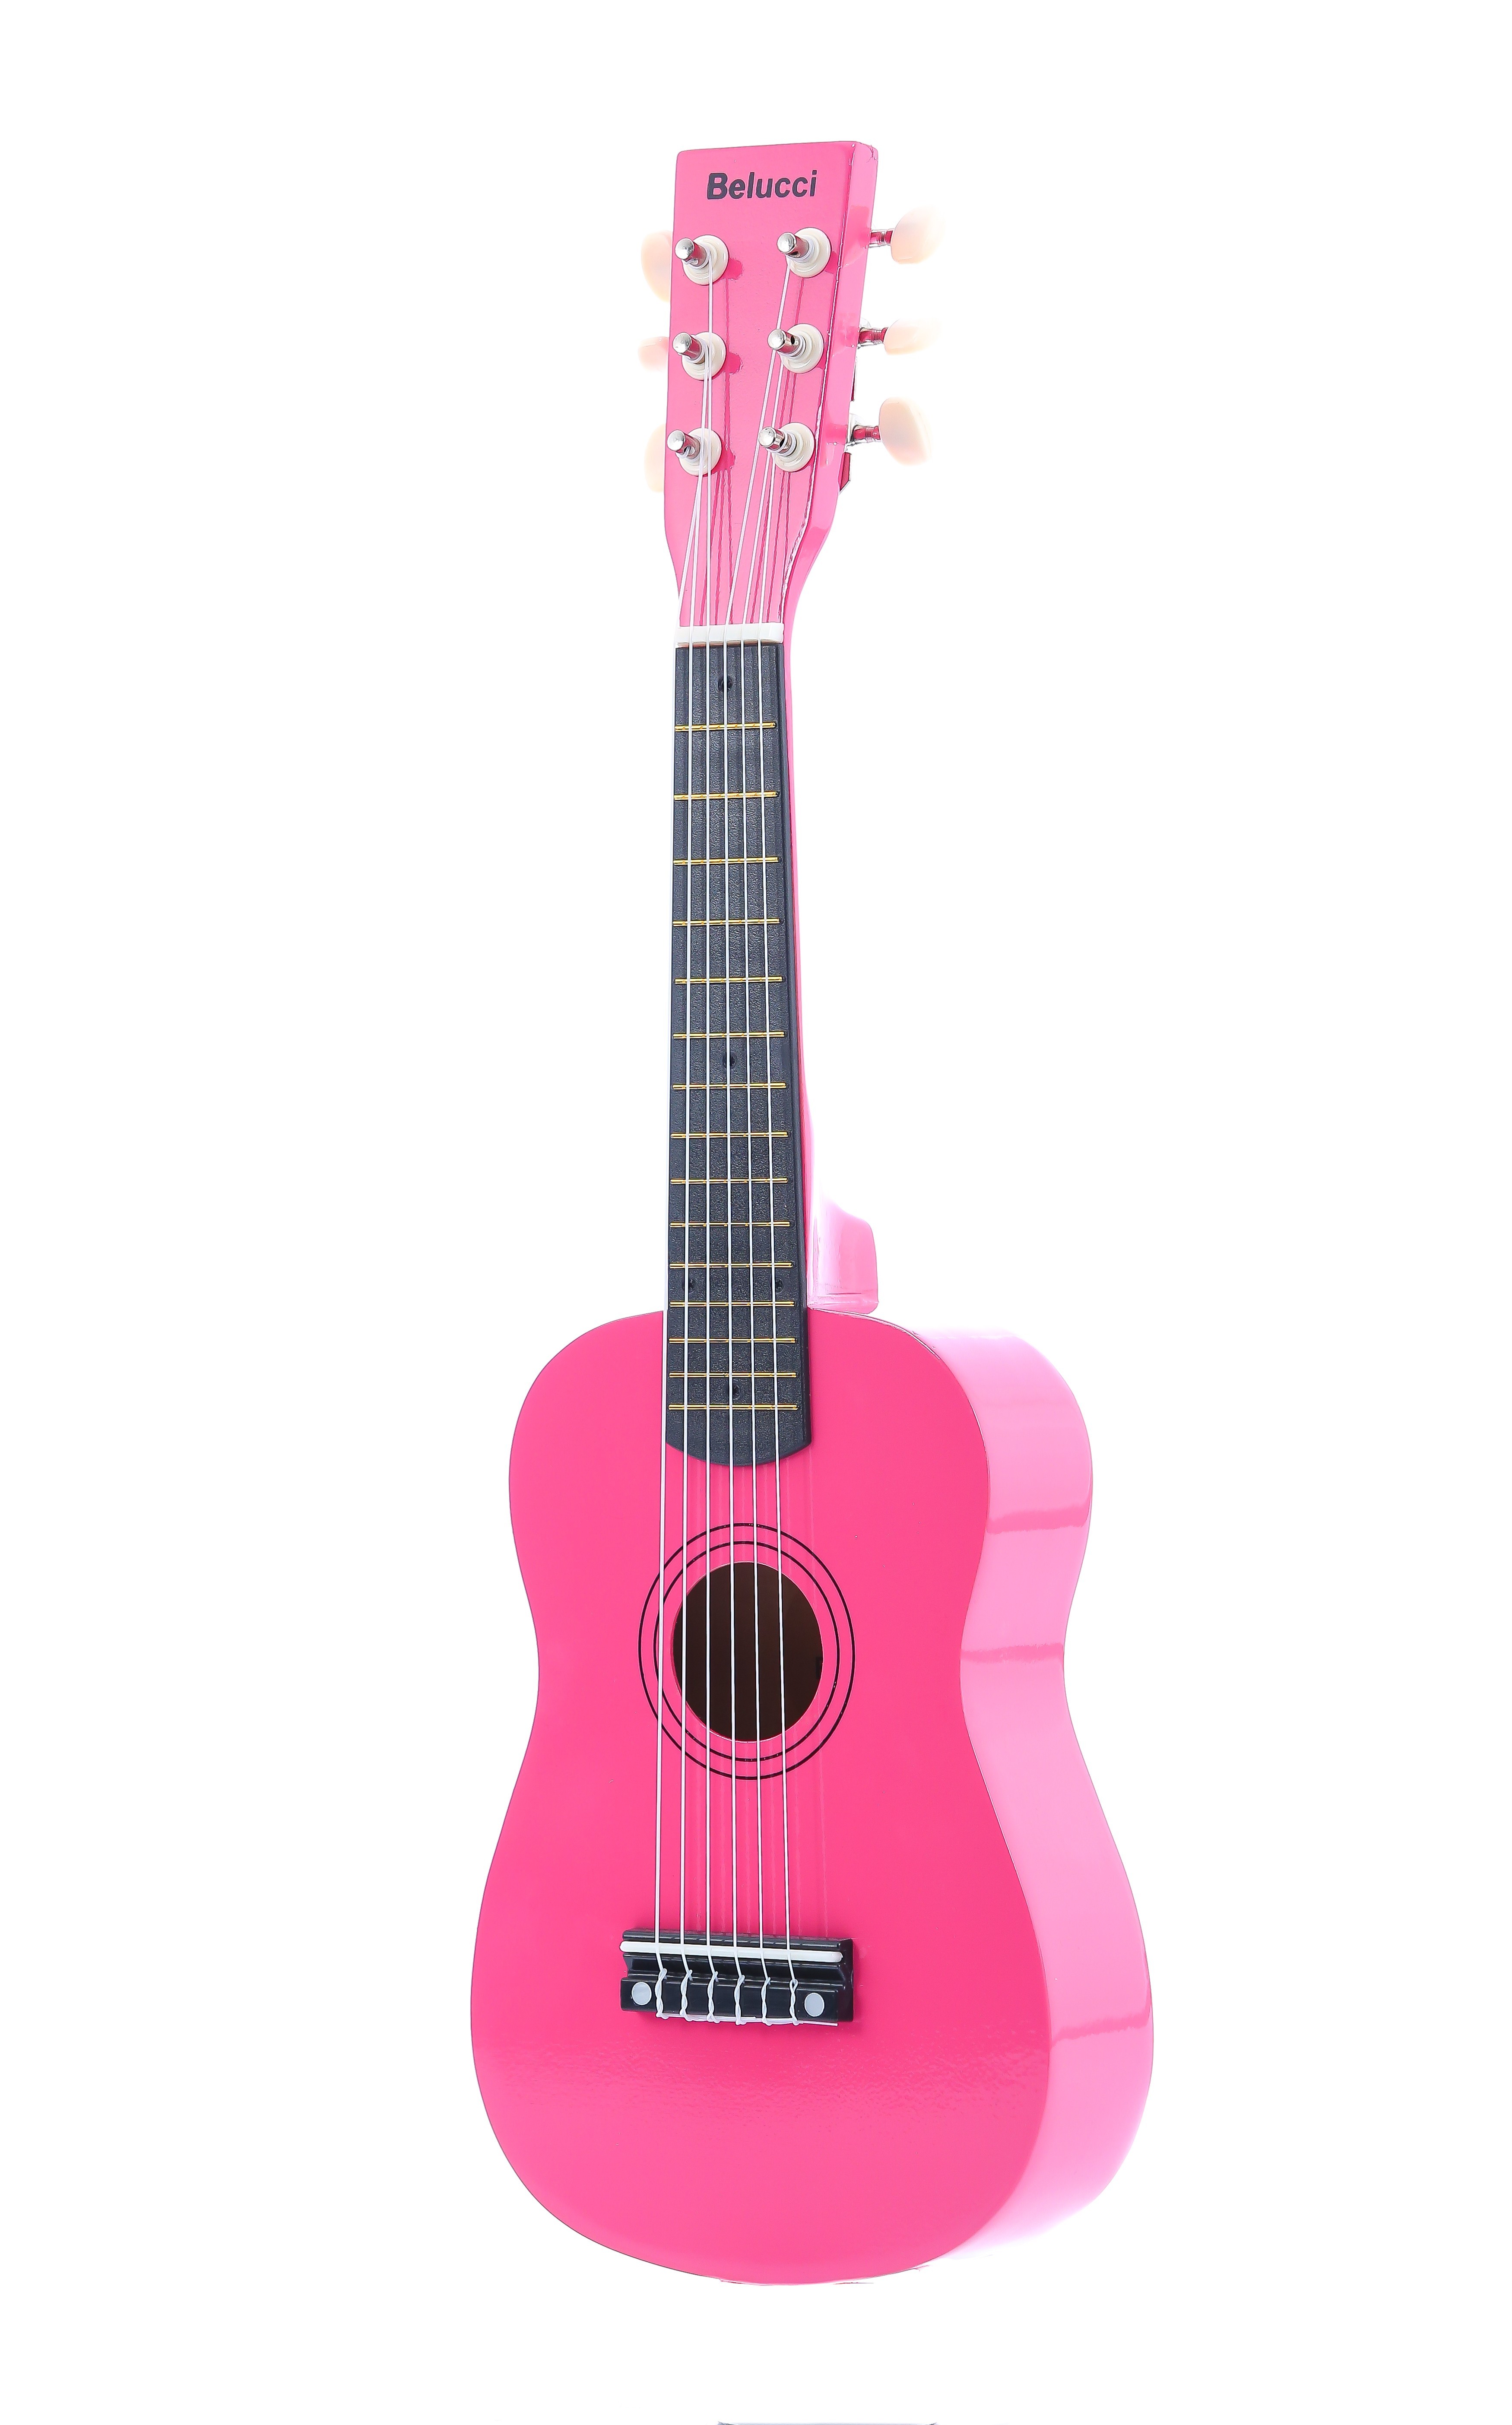 Детальная картинка товара Belucci XU23-21 Rose Pink в магазине Музыкальный Мир